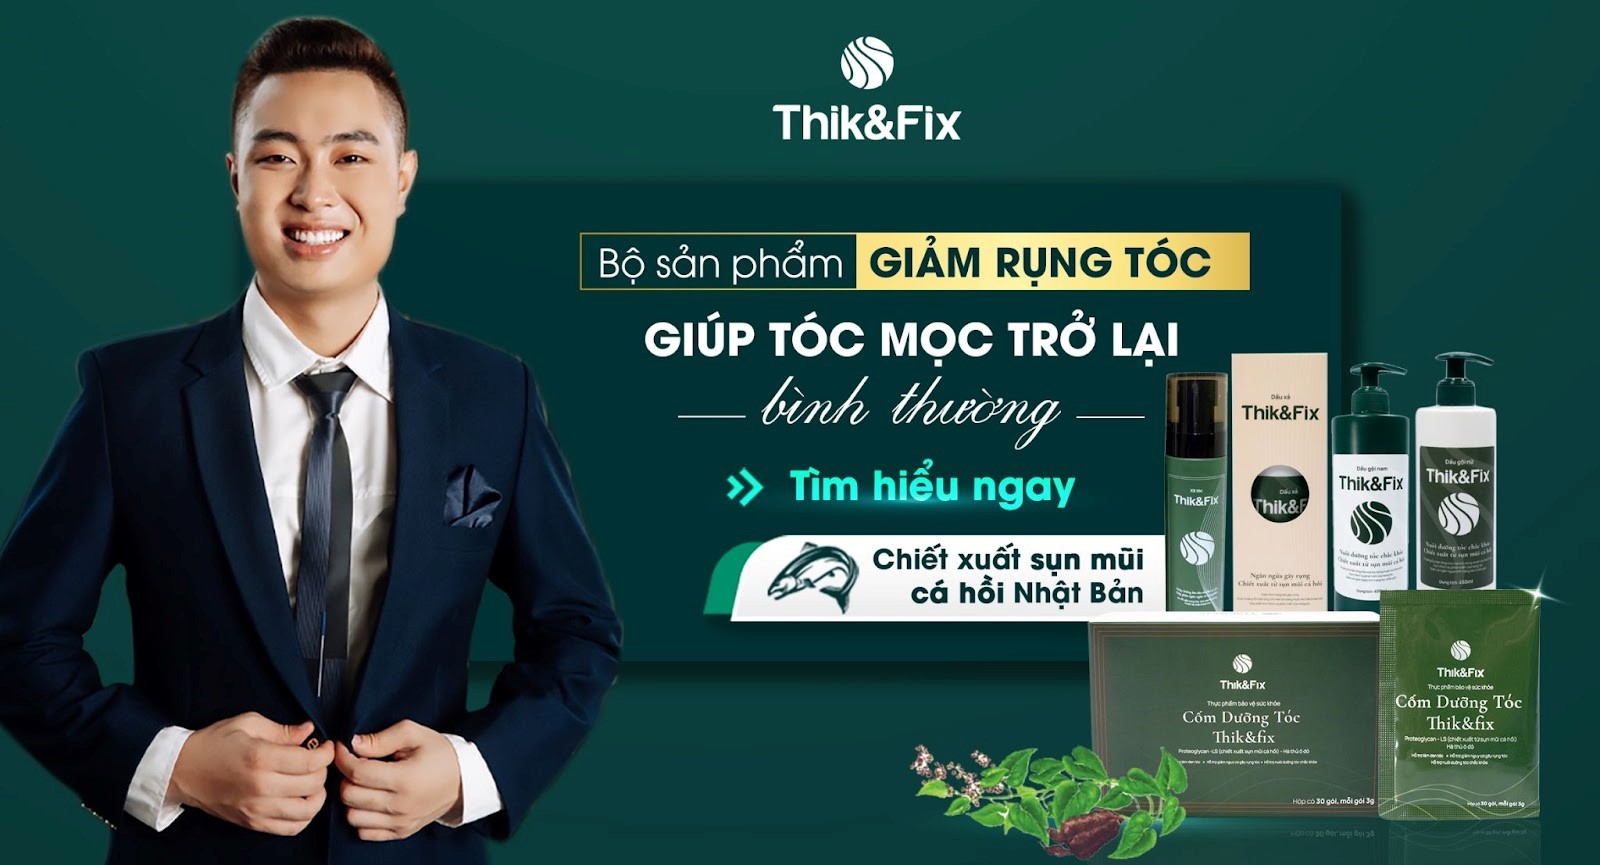 CEO Phạm Văn Hải và hành trình tâm huyết với Thik&Fix - thương hiệu chăm sóc tóc toàn diện - 1